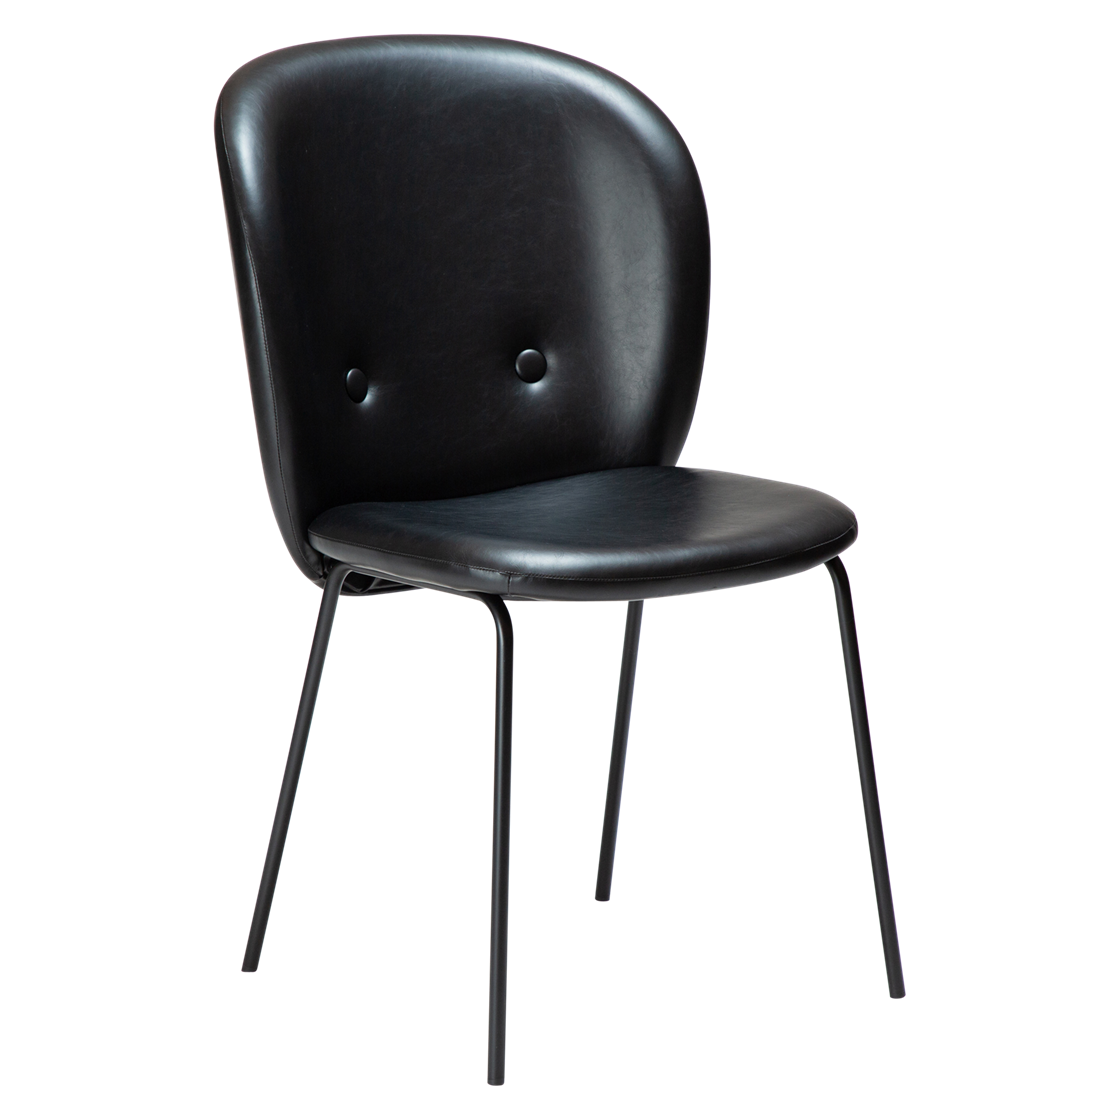 DAN-FORM Brace spisebordsstol - vintage sort kunstlæder og sort stål